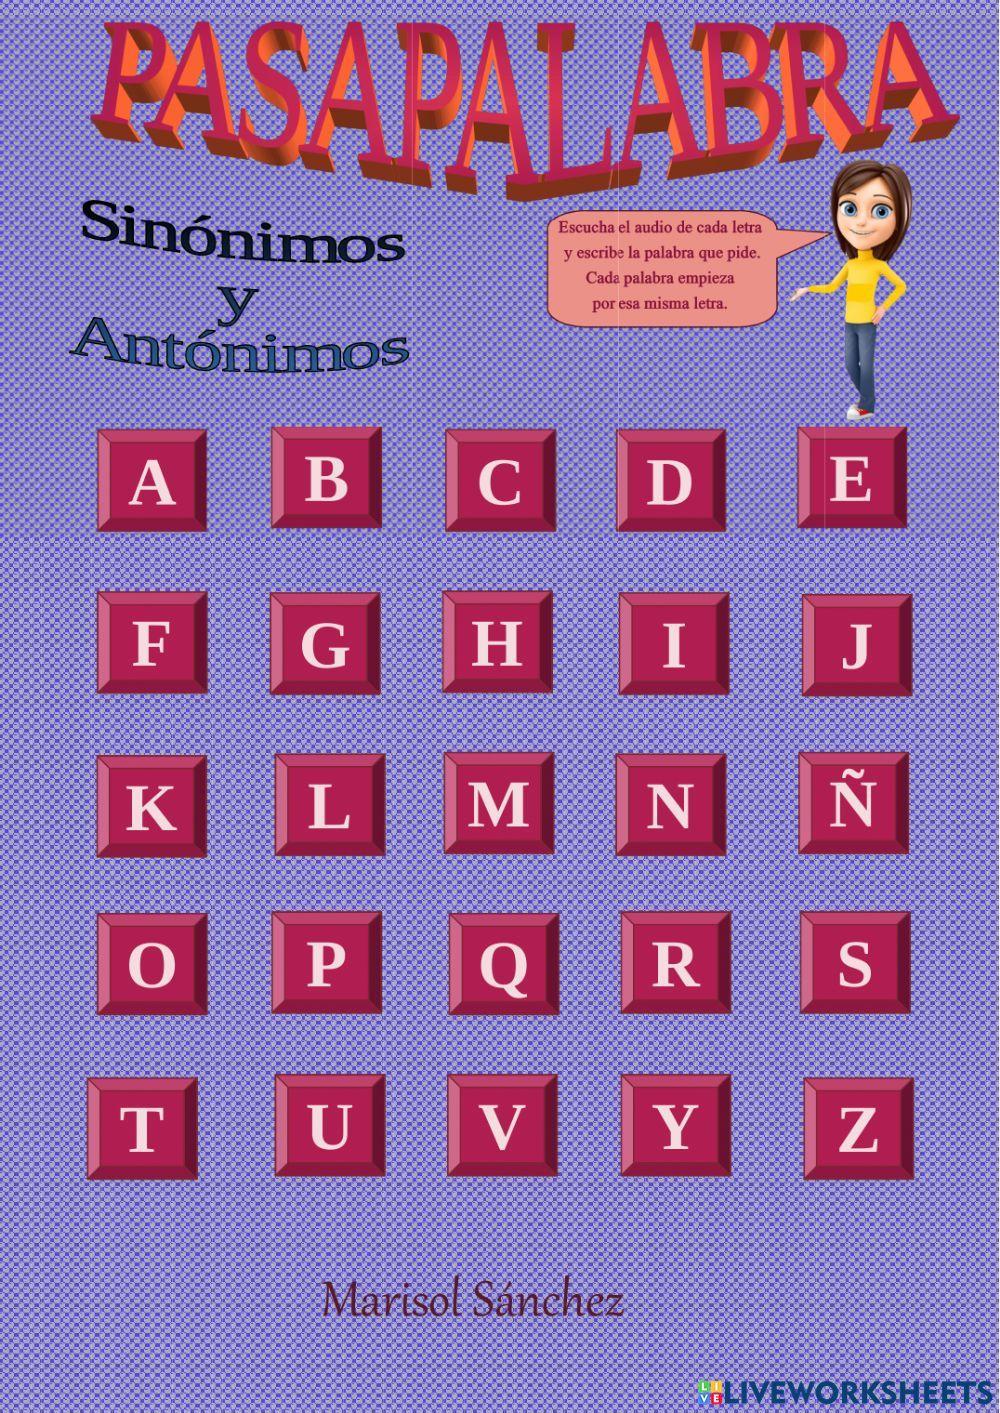 Pasapalabra Sinónimos y Antónimos